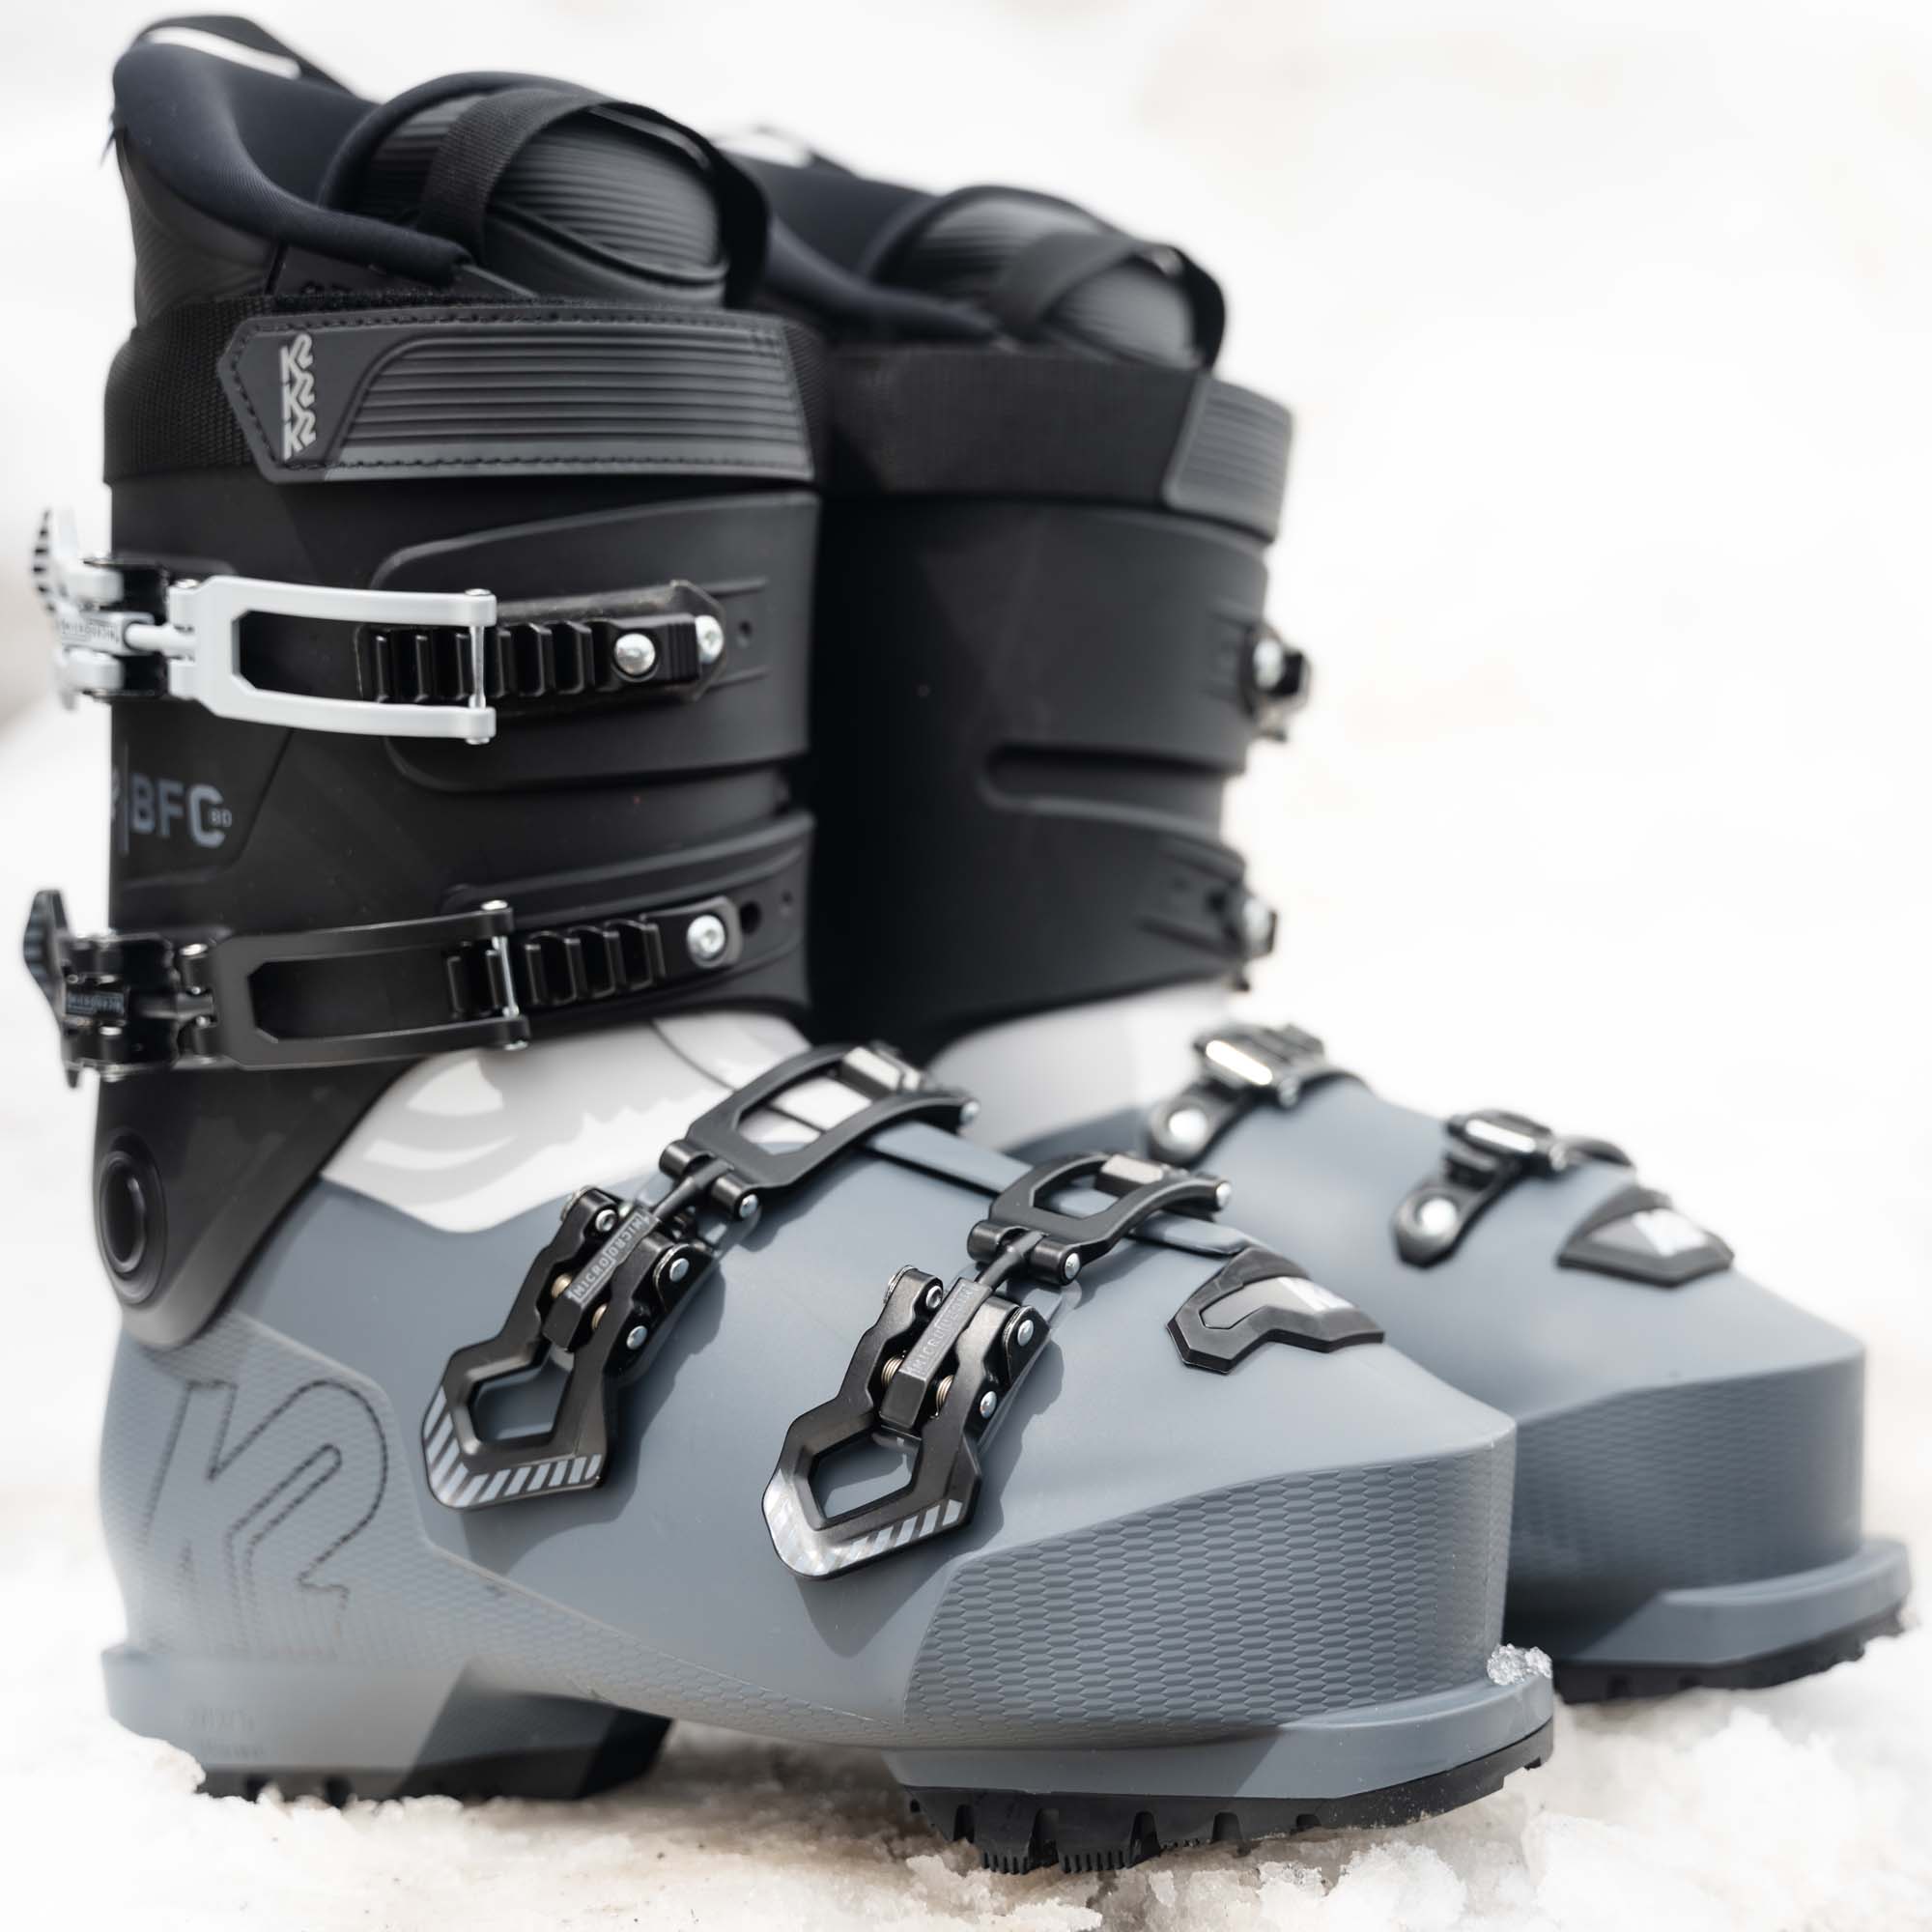 K2 BFC 80 GripWalk Ski Boots